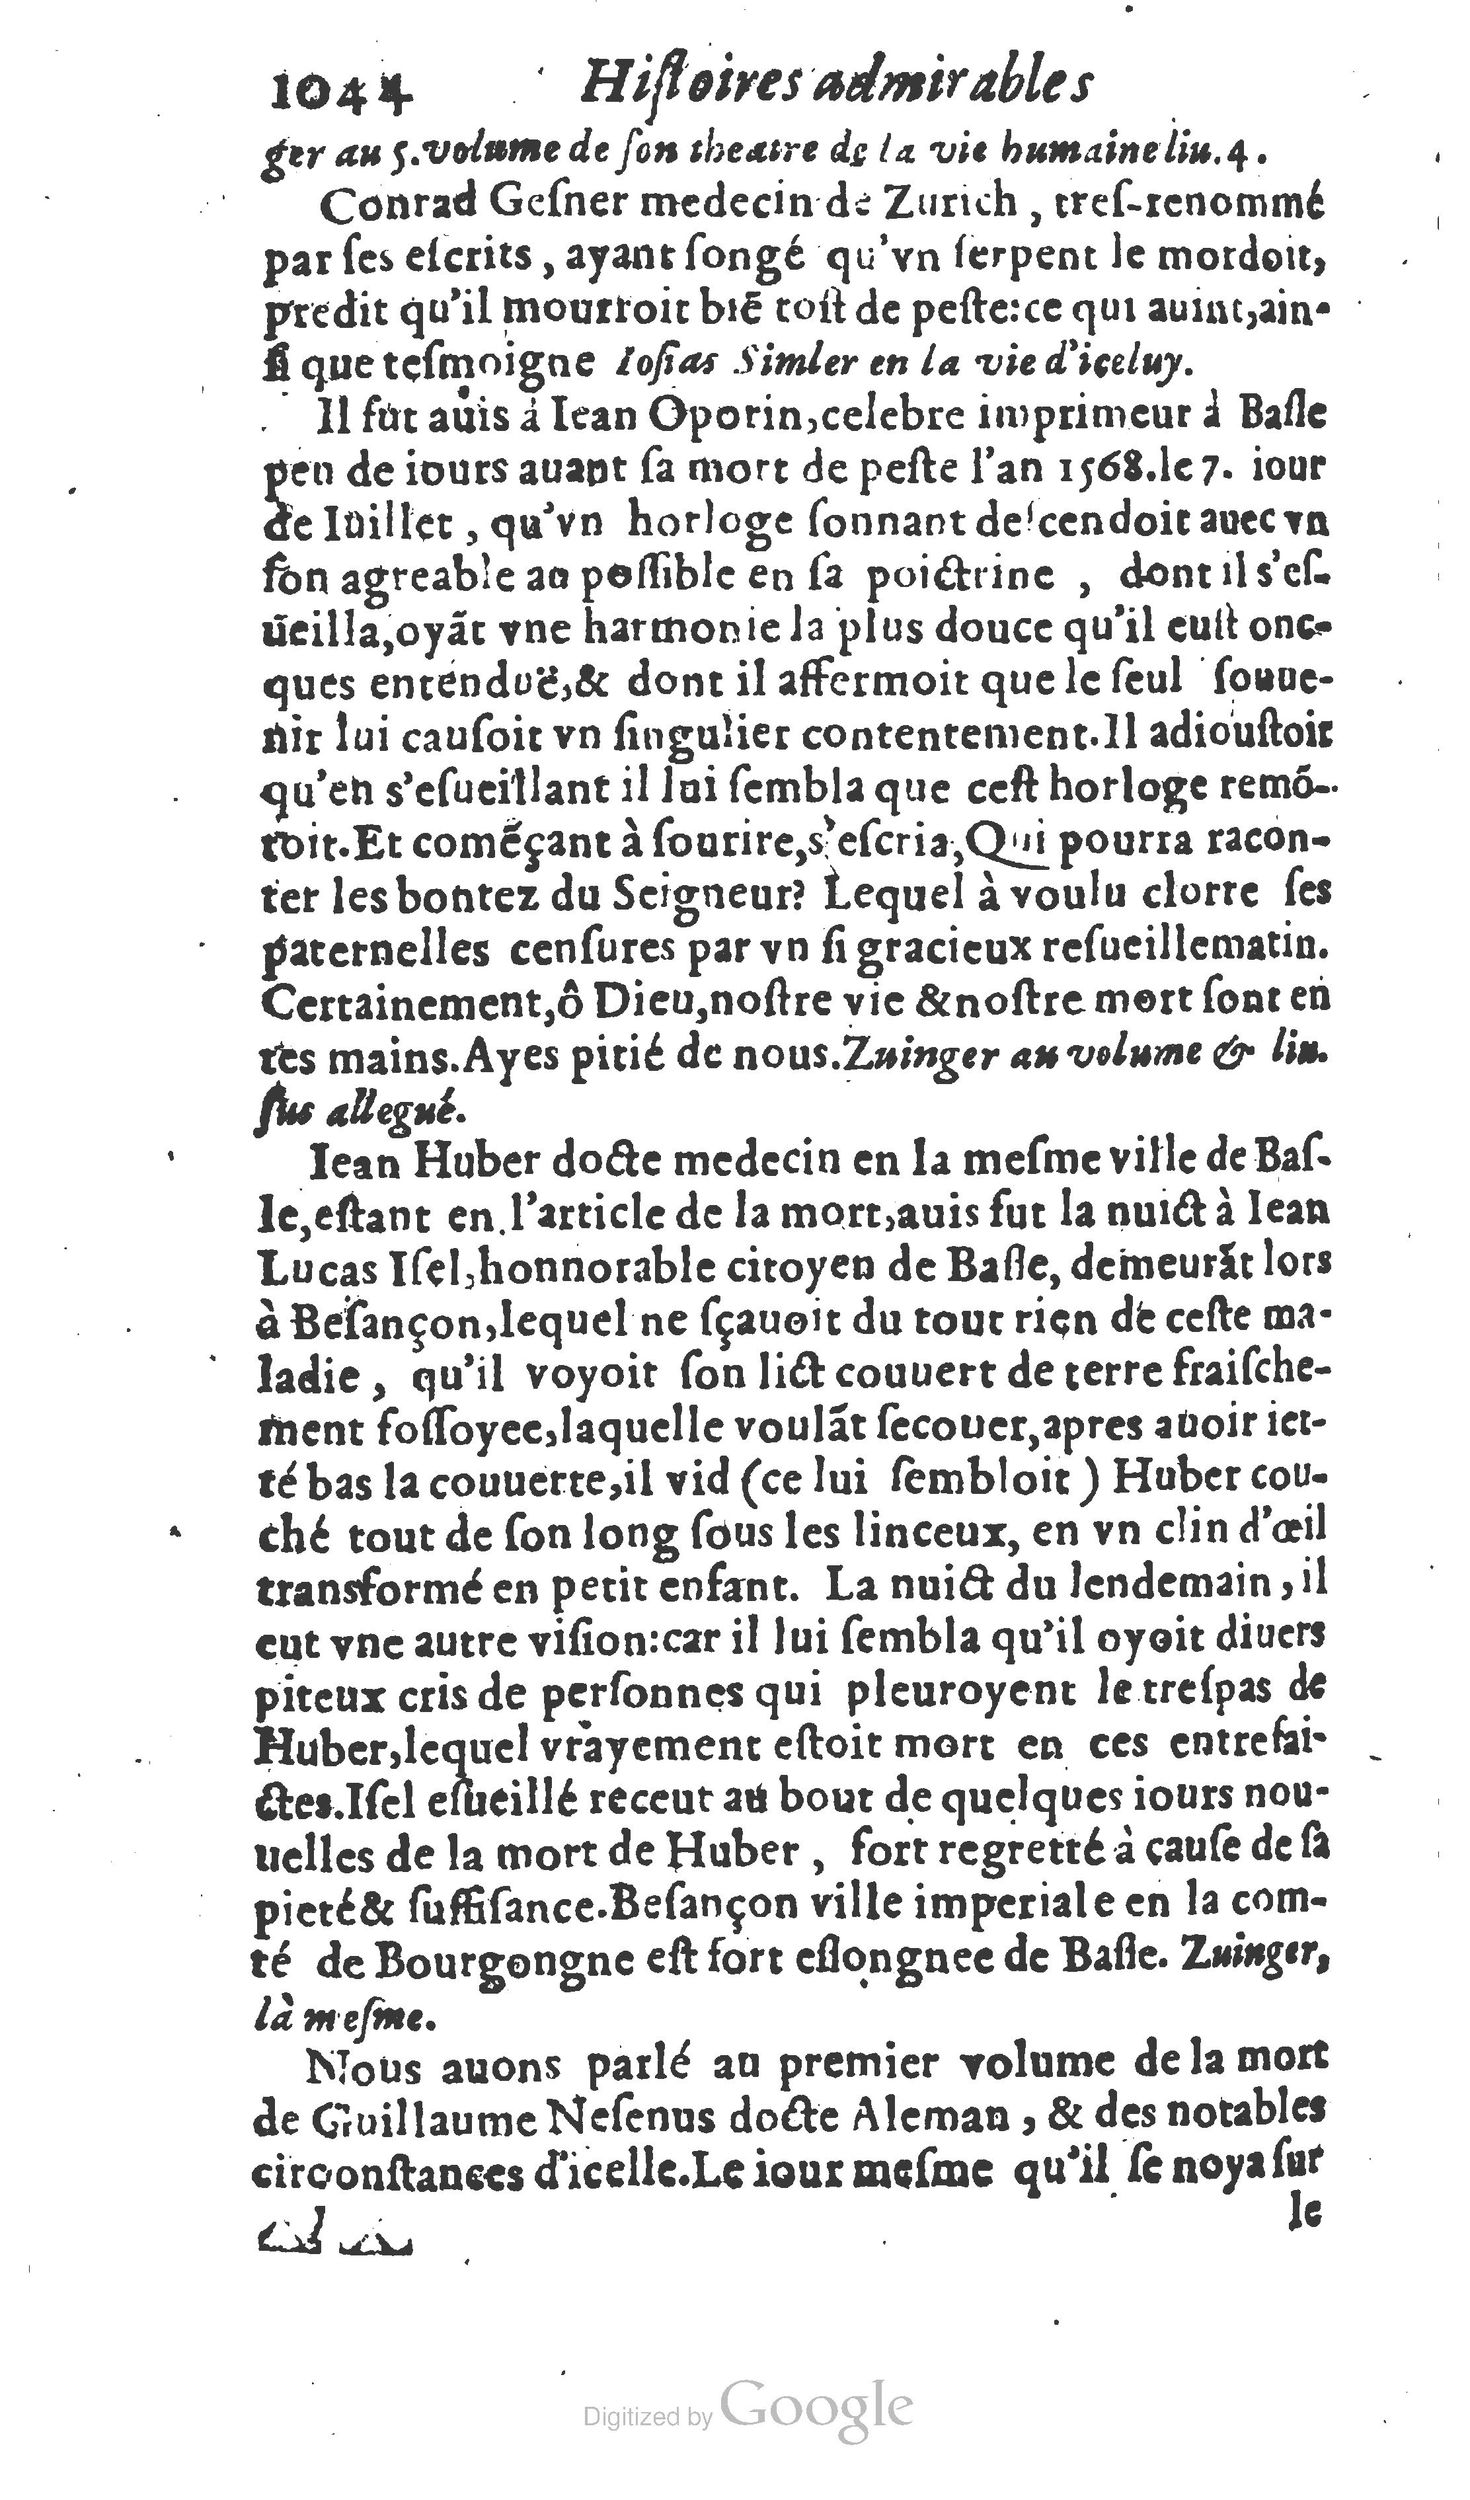 1610 Trésor d’histoires admirables et mémorables de nostre temps Marceau Princeton_Page_1065.jpg